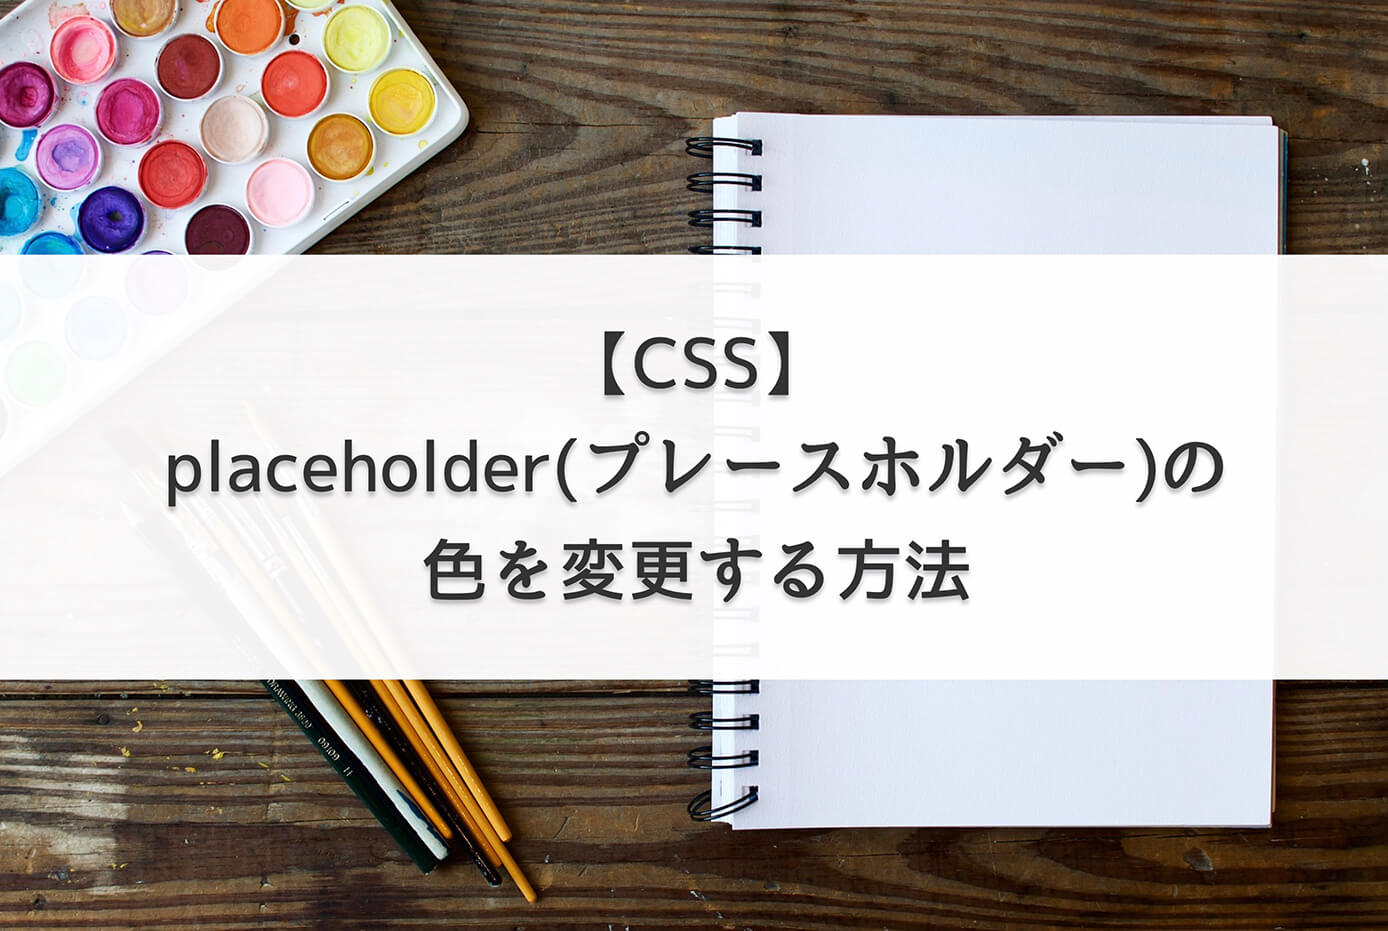 【CSS】placeholder(プレースホルダー)の色を変更する方法